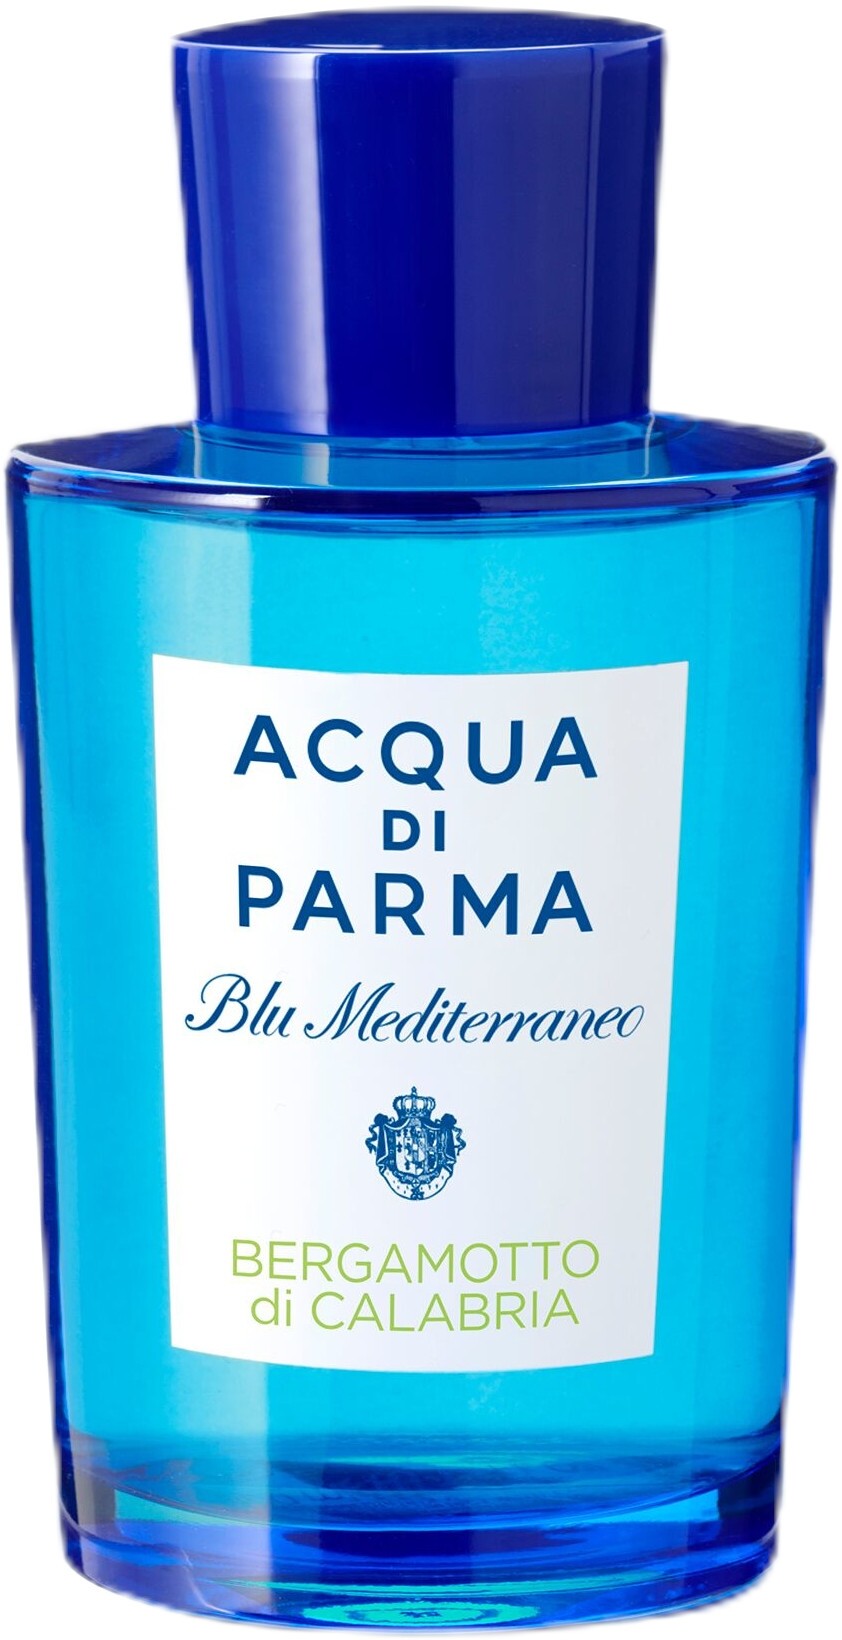 Acqua di Parma Blu Mediterraneo Bergamotto di Calabria Eau de Toilette Spray 180ml